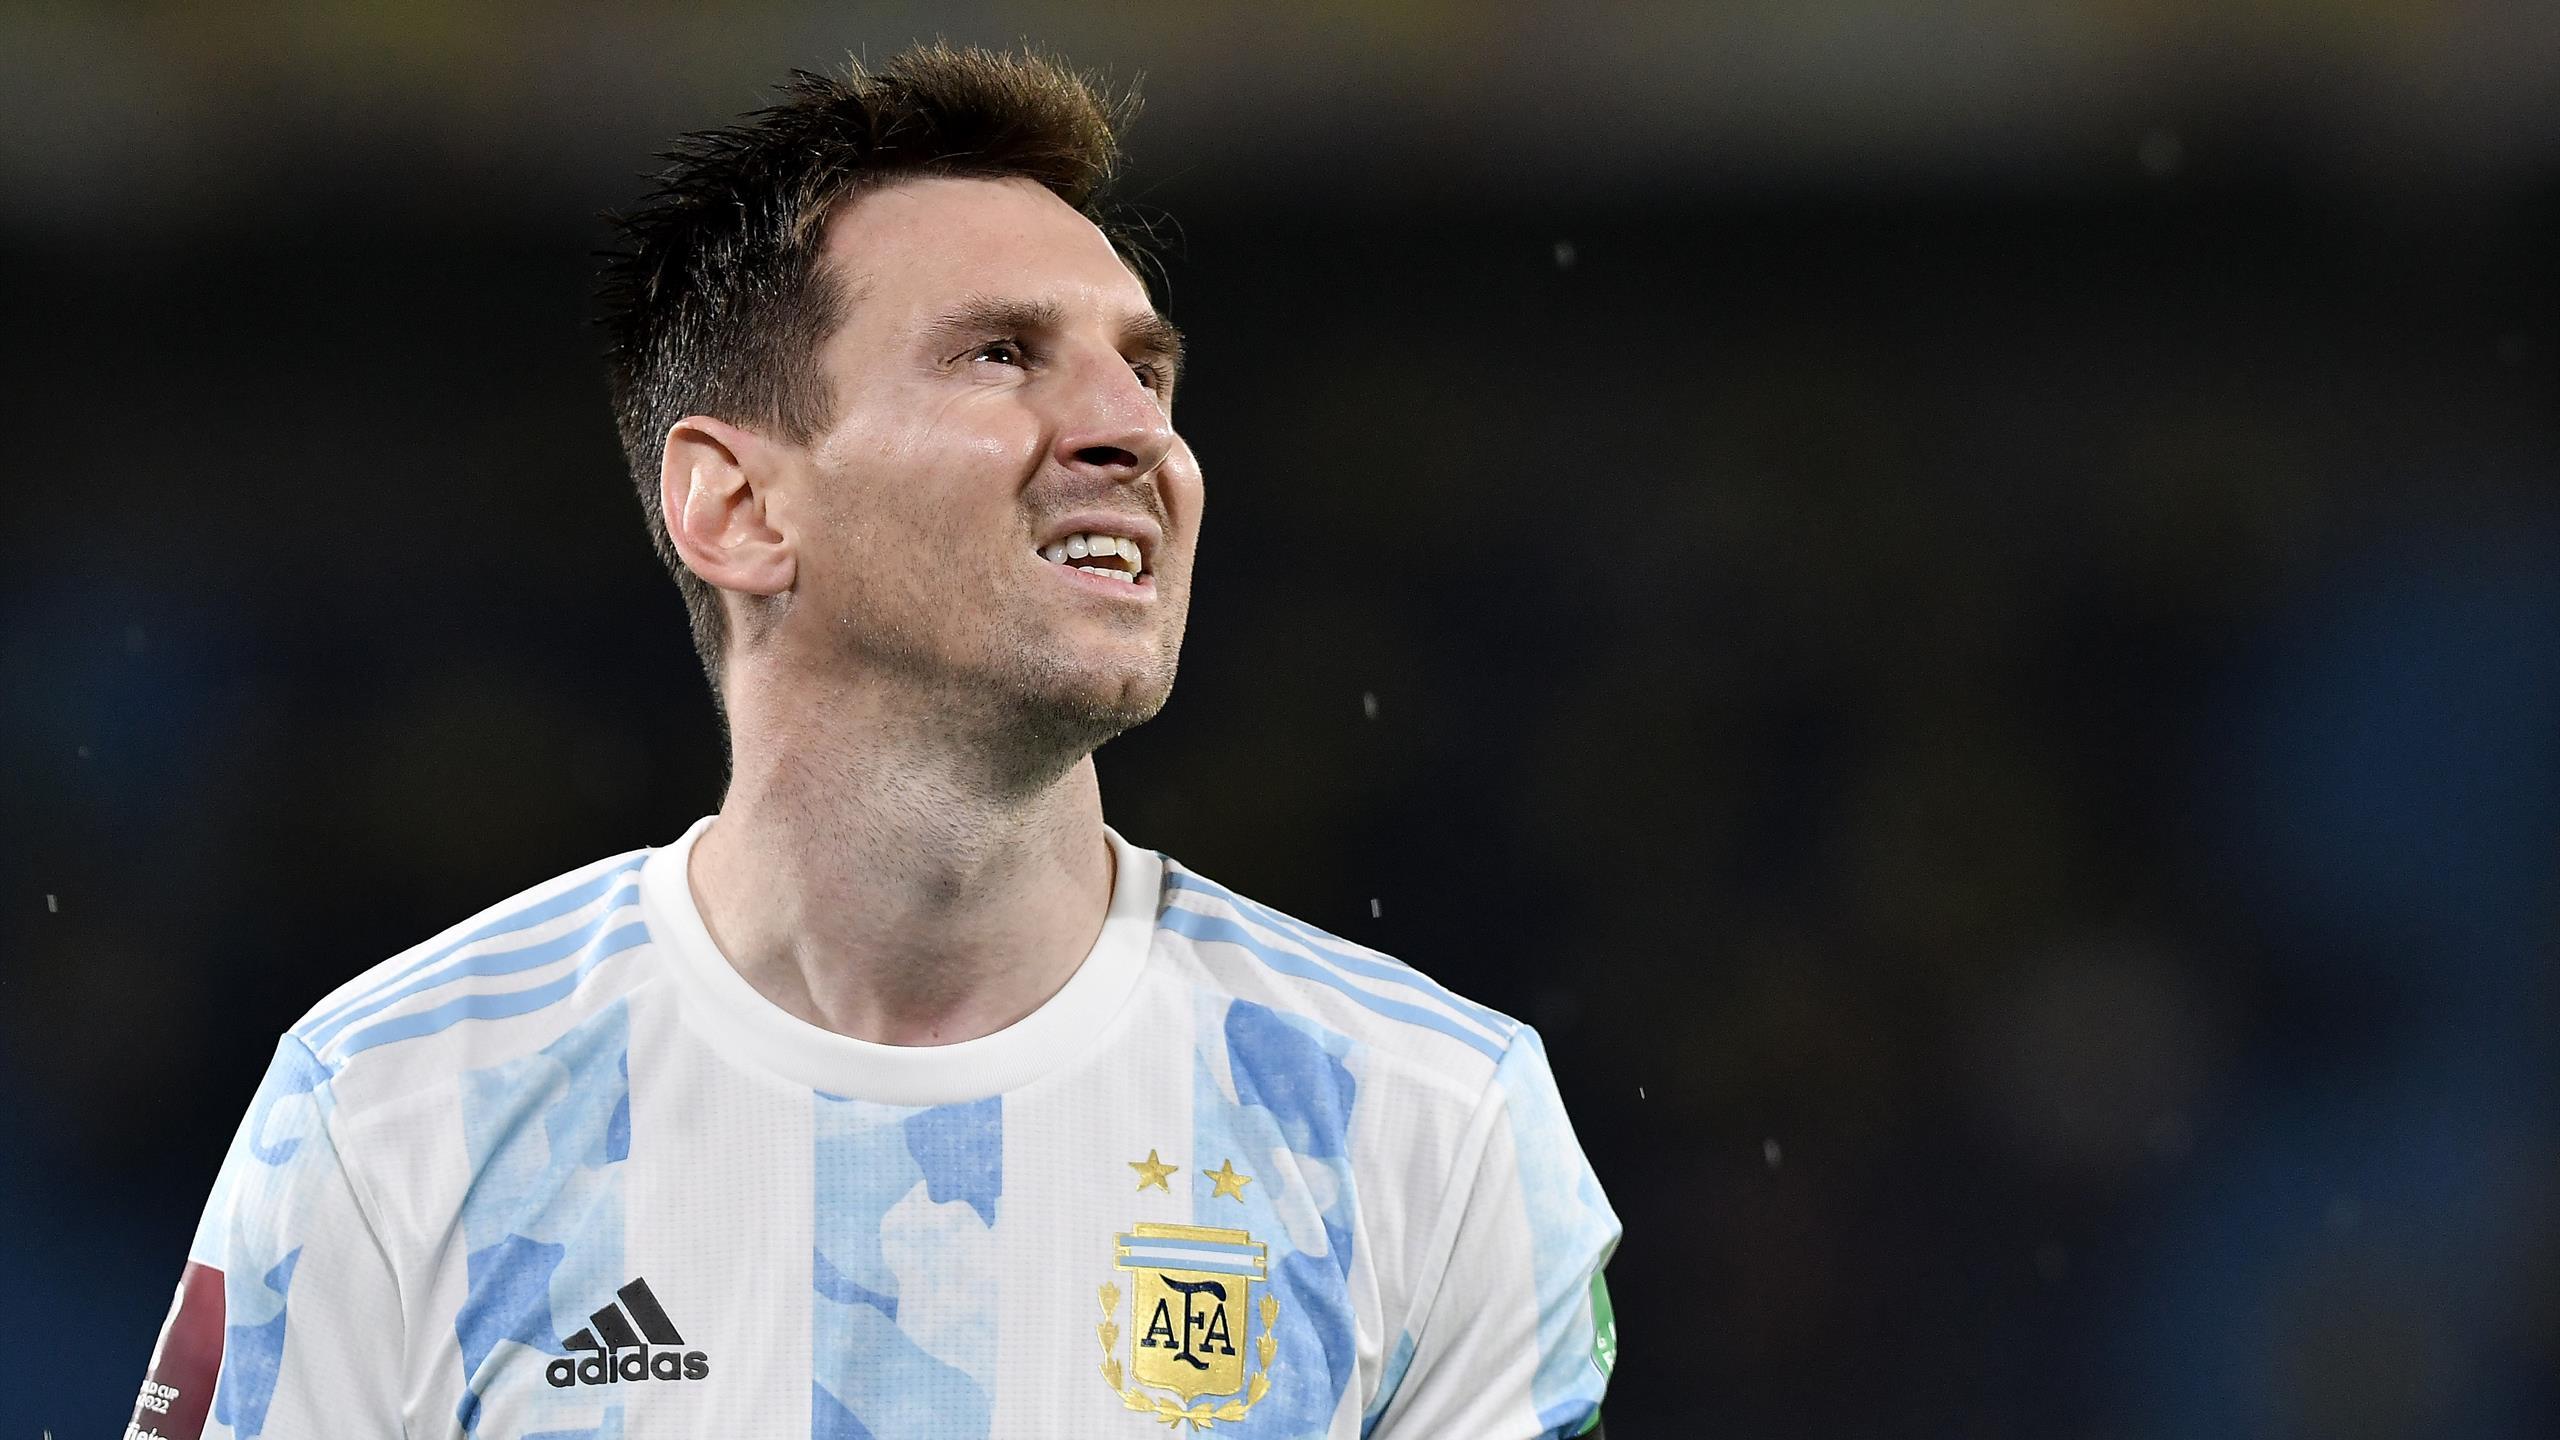 Lionel Messi Copa America Centenario ARGENTINA by DjSHaHrUkH on DeviantArt